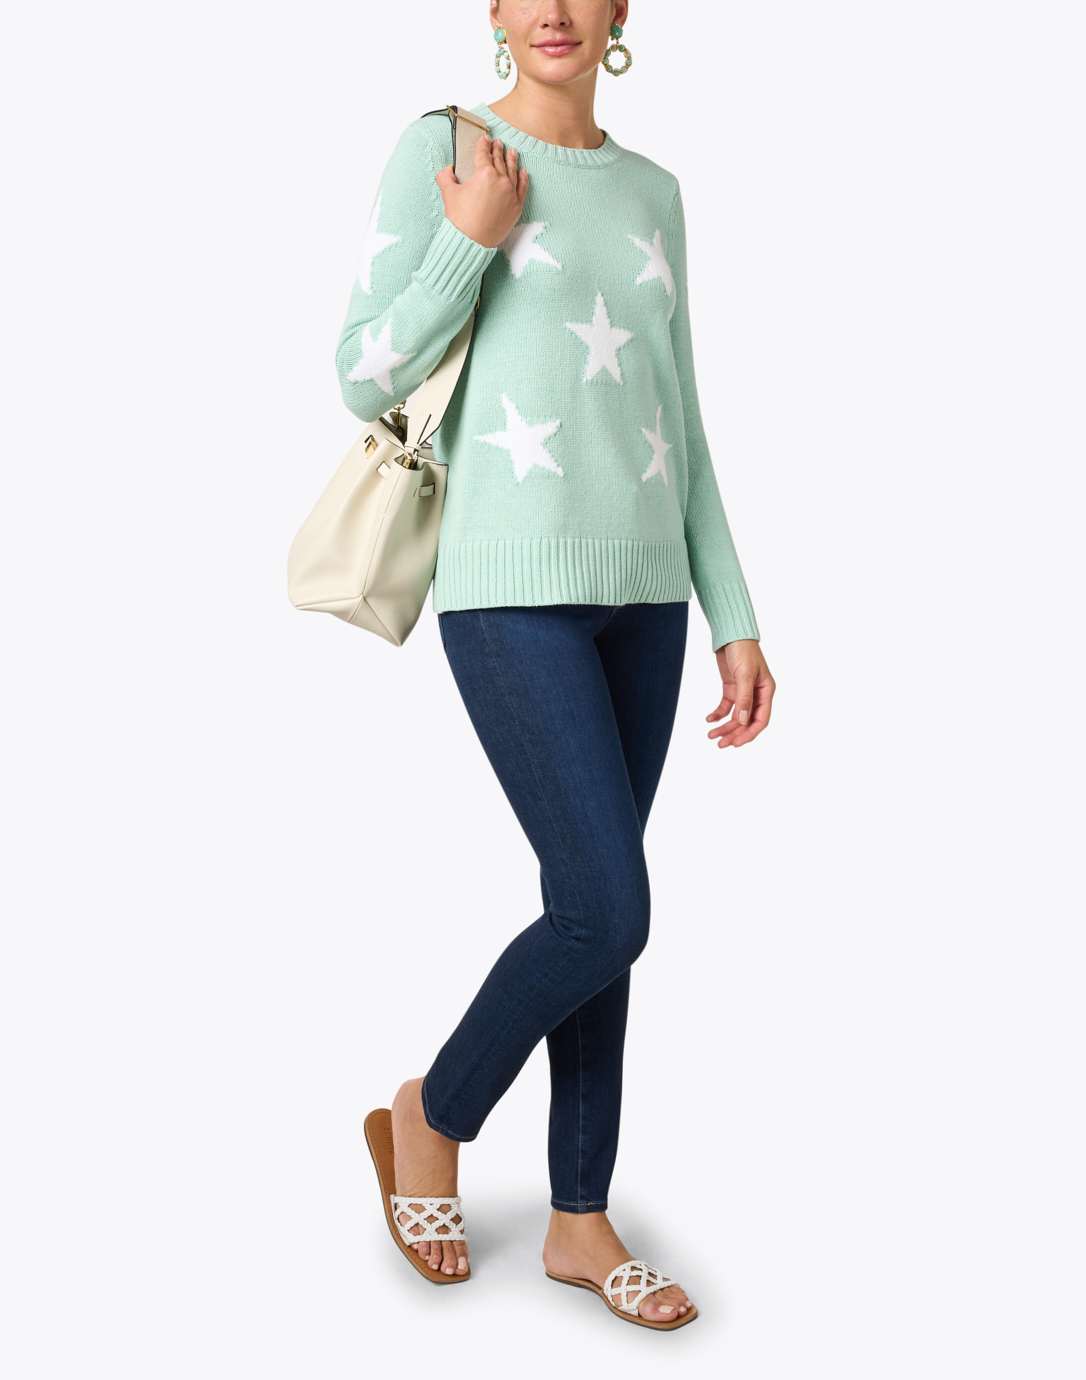 Sail to Sable Seafoam Green Cotton Intarsia Sweater - Size 12